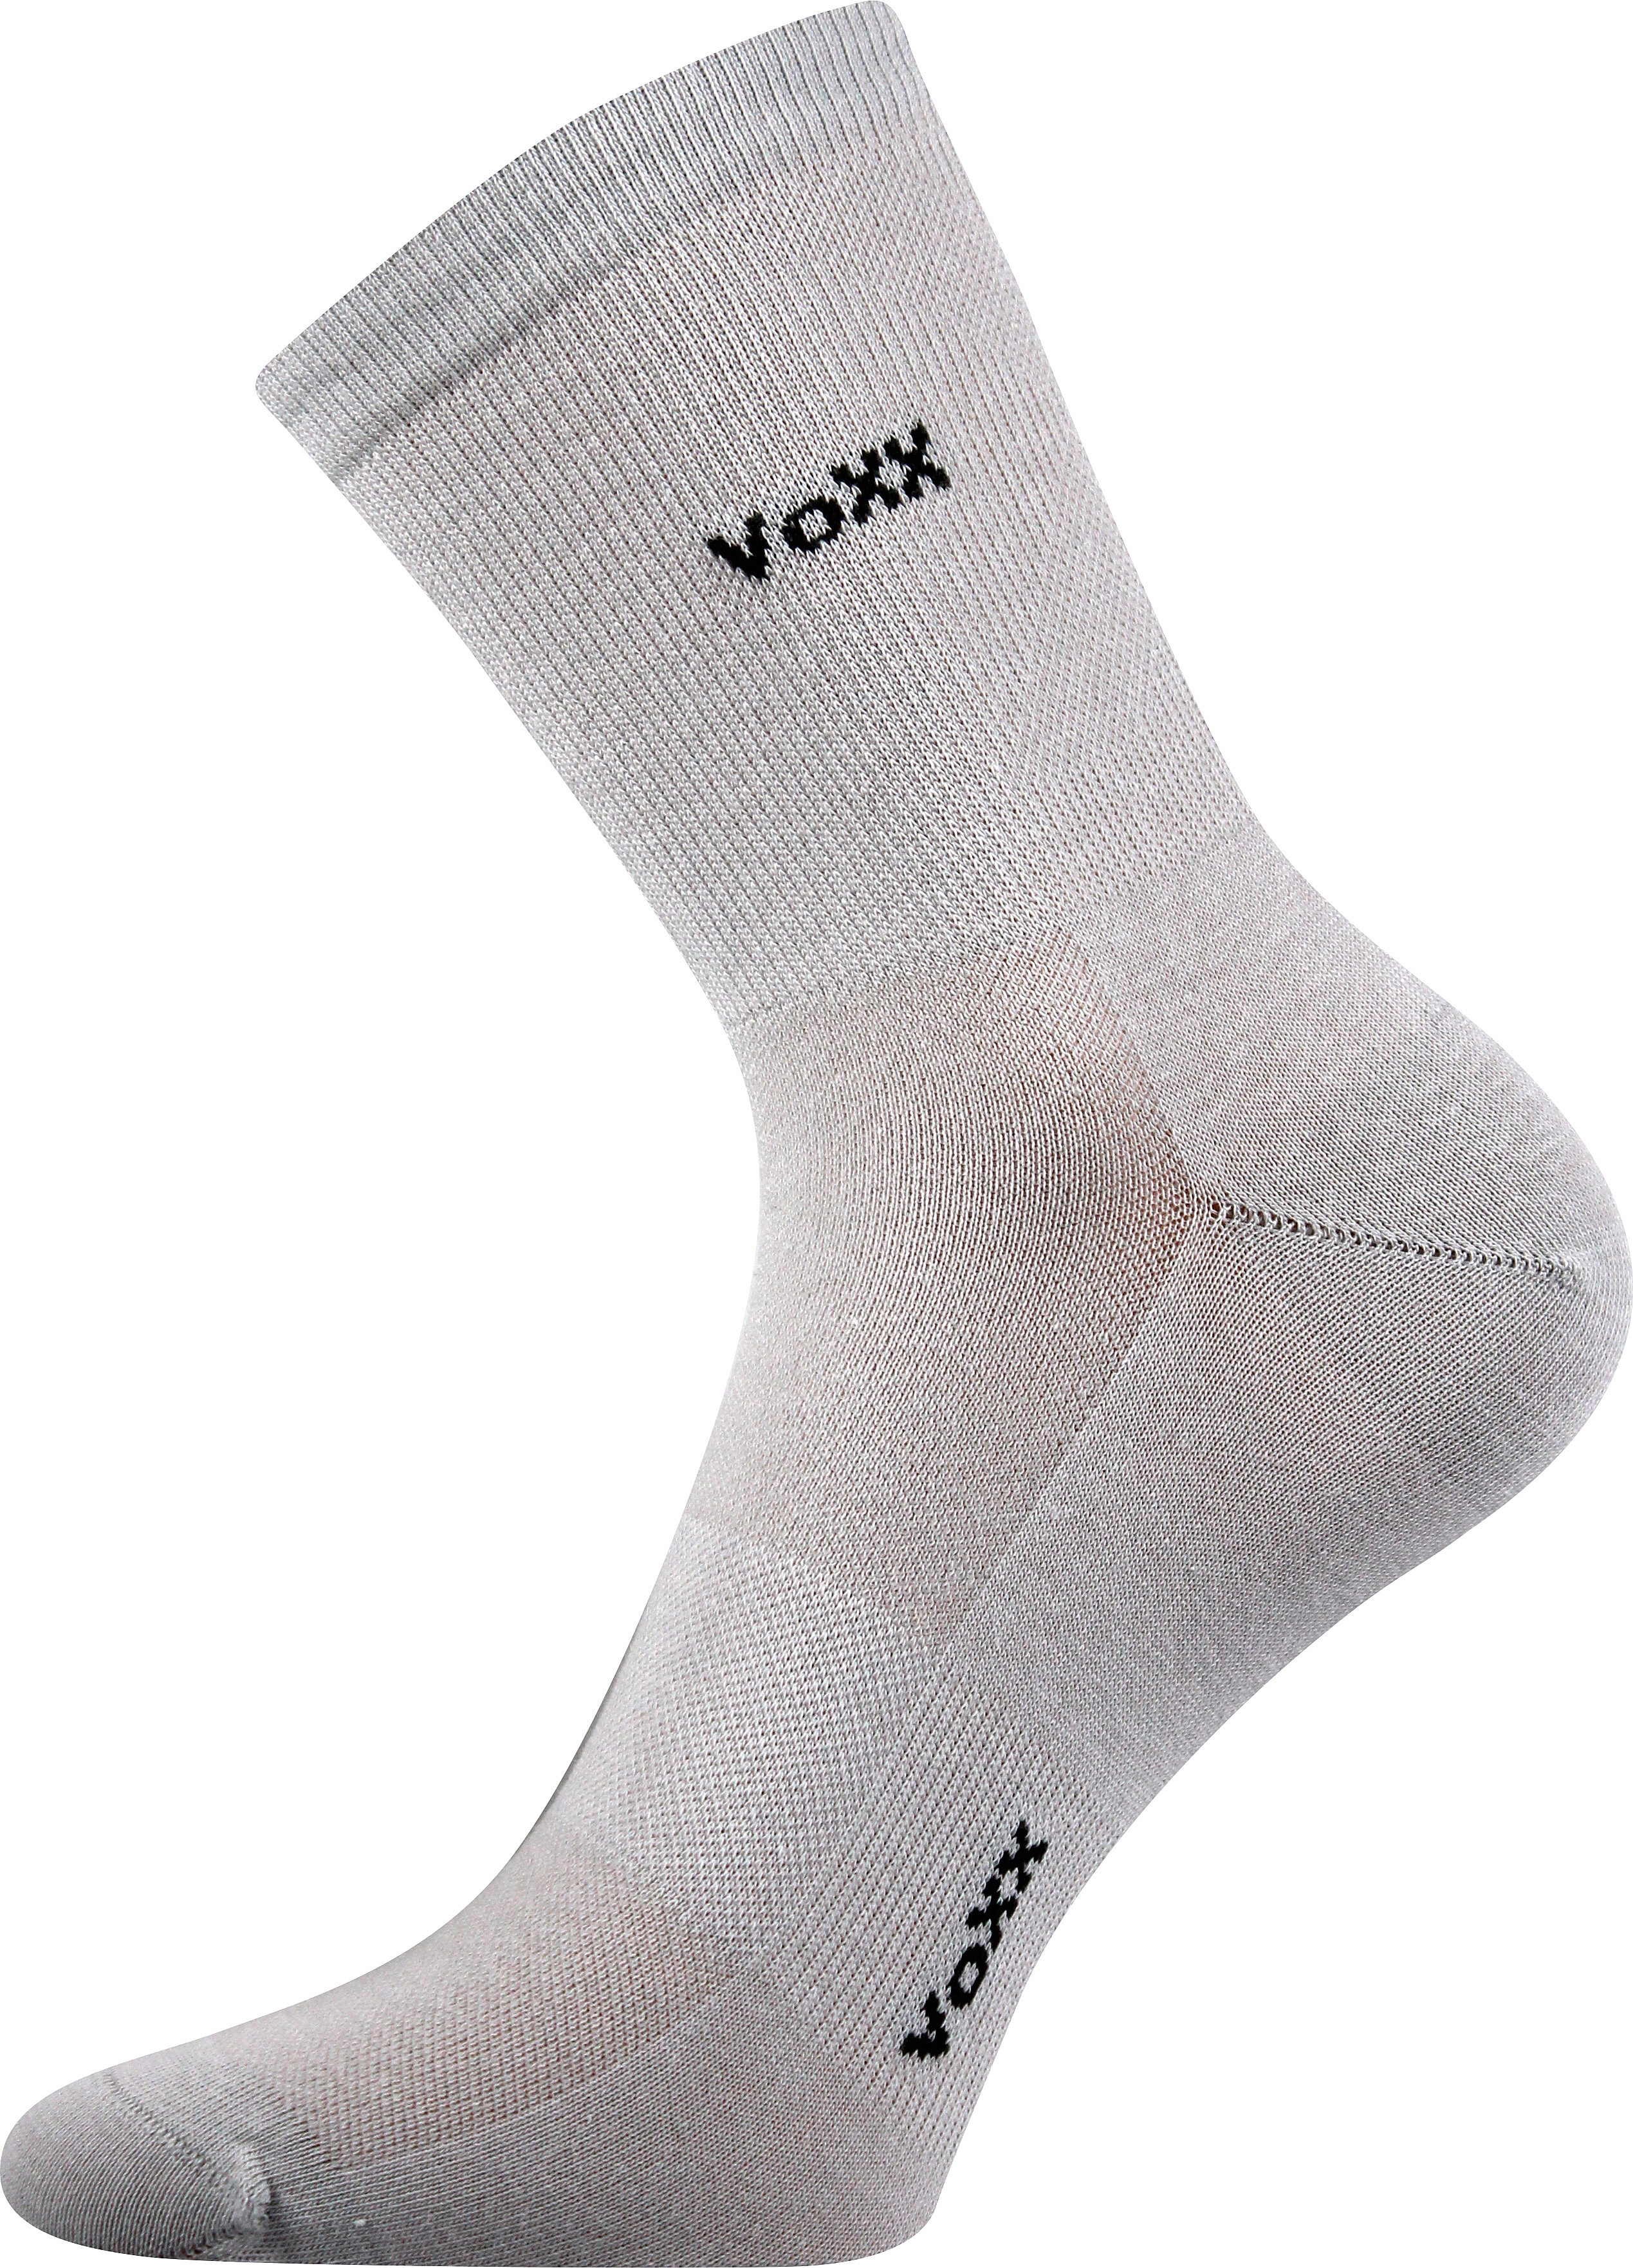 Ponožky sportovní Voxx Horizon - světle šedé, 43-46